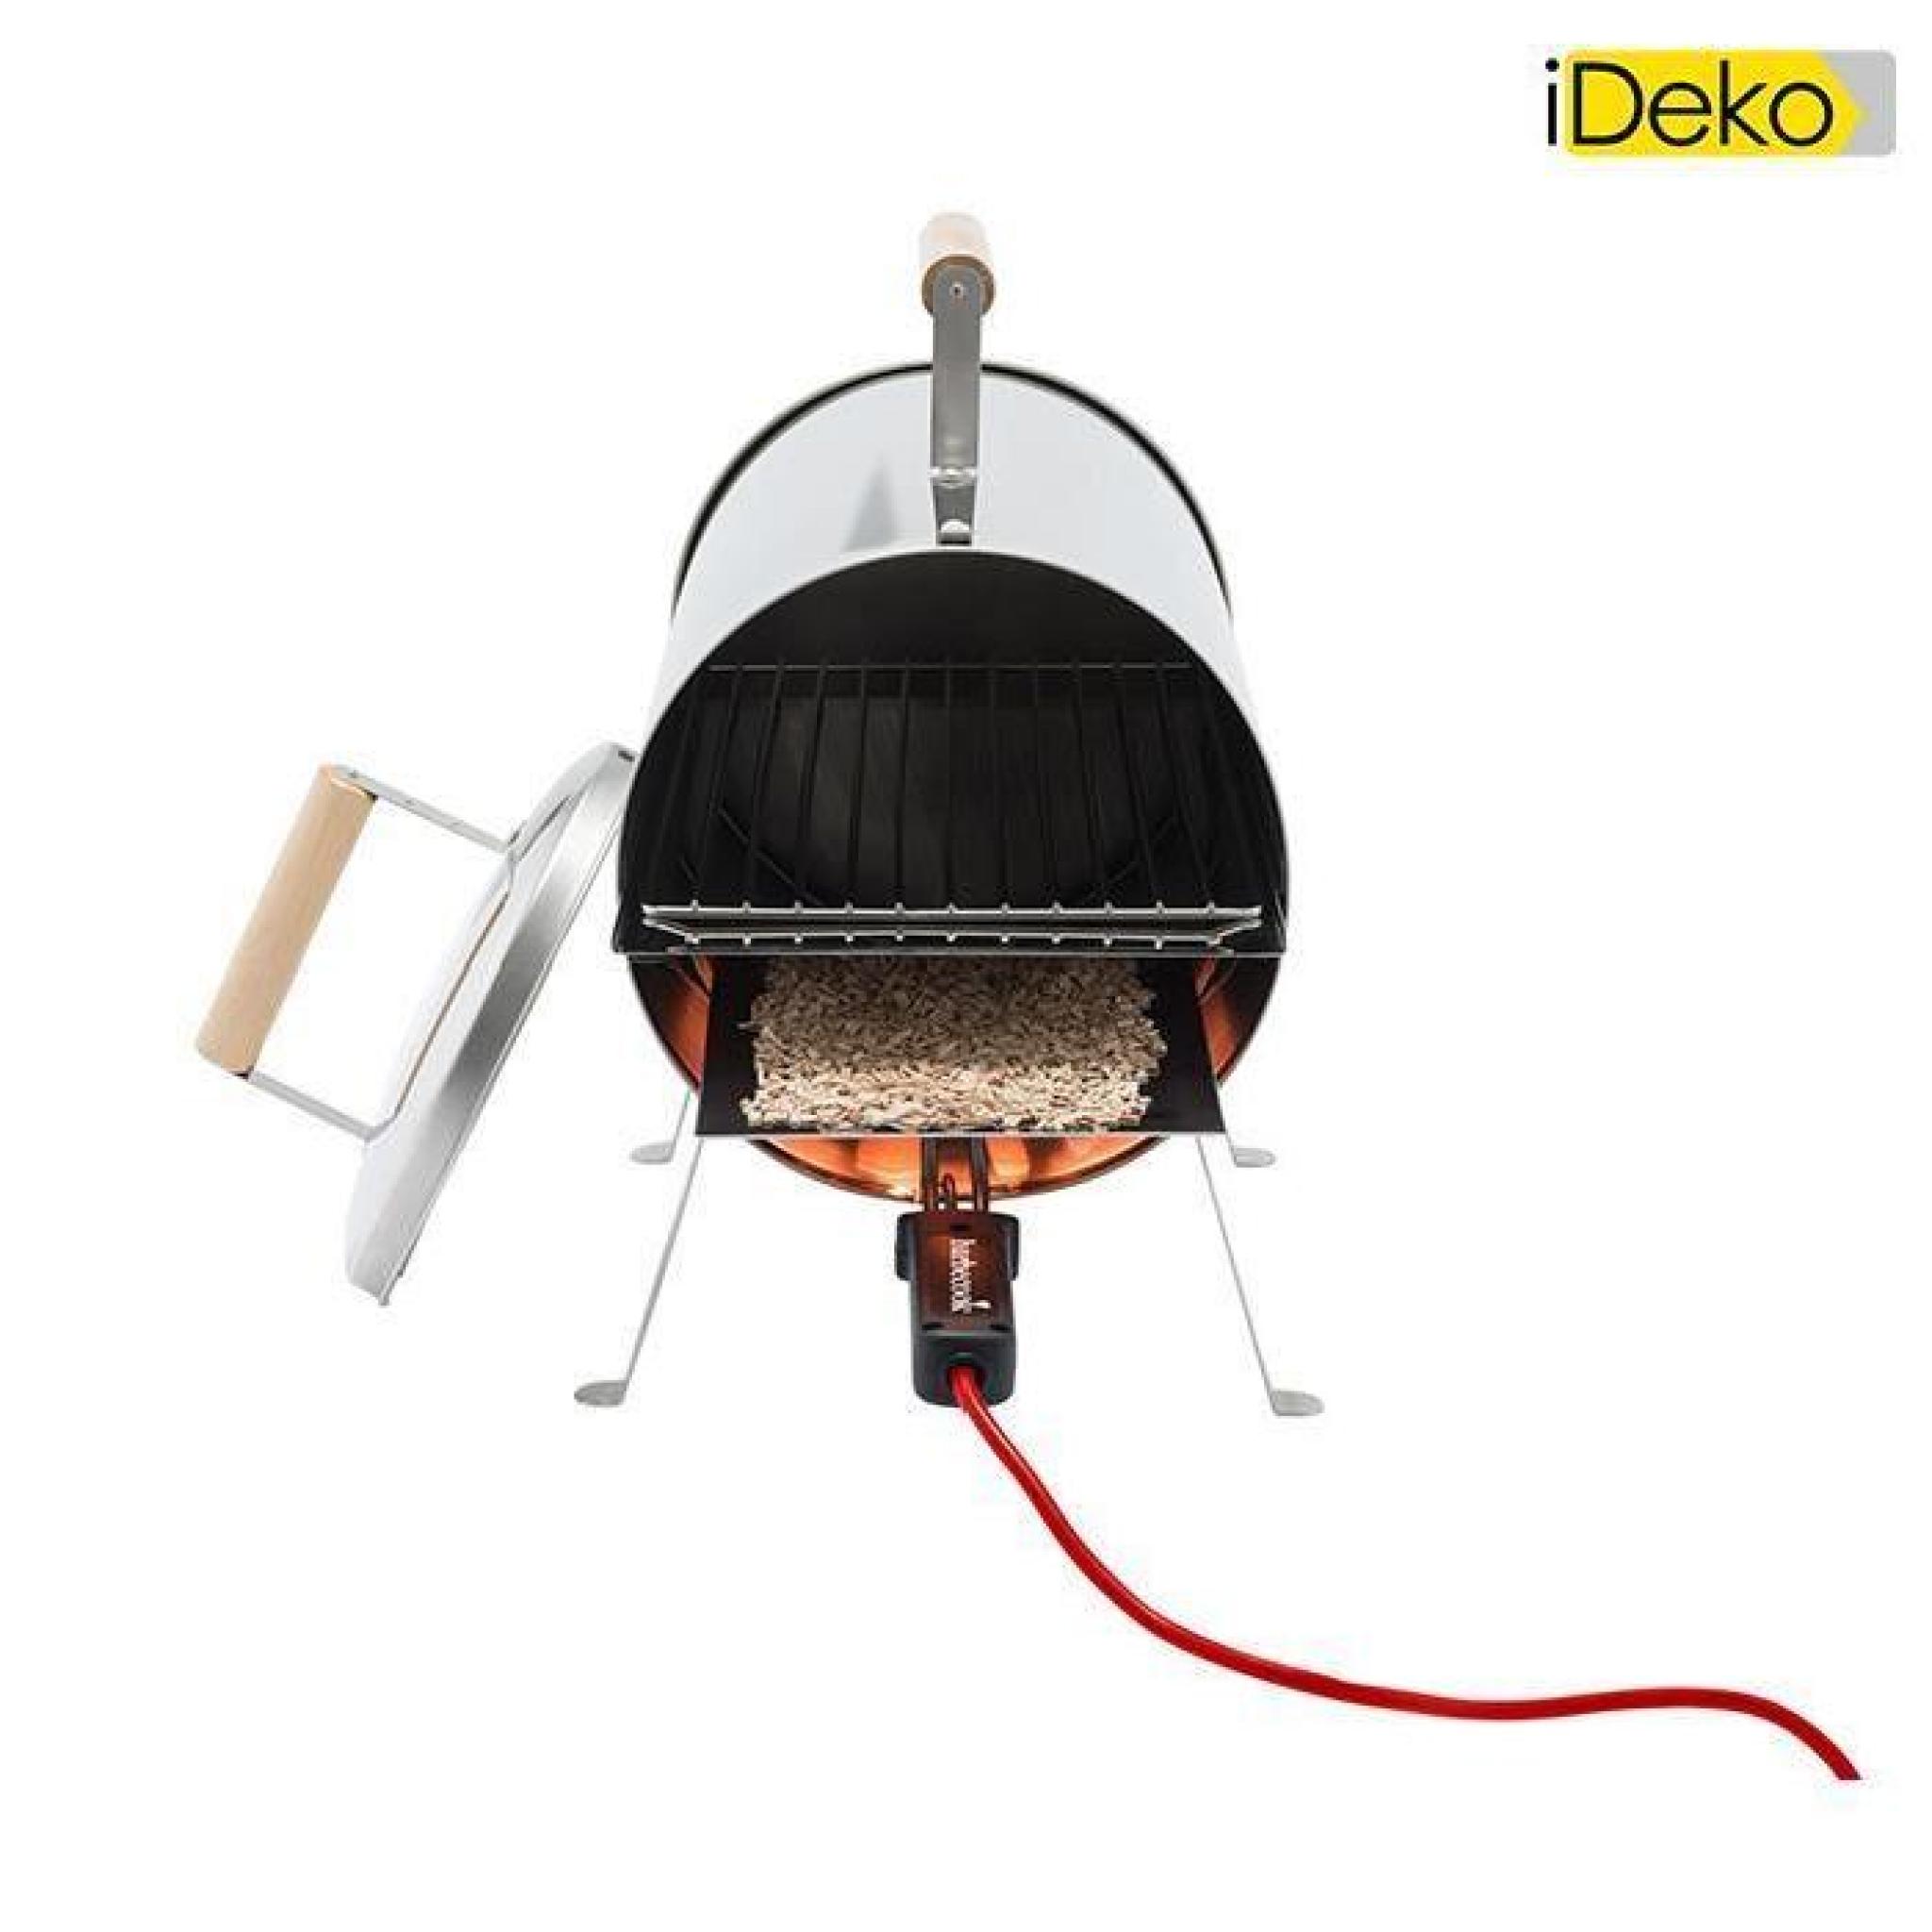 iDeko®Barbecue Fumoir électrique en inox, 1100W/250V 4 personnes 64x26x36cm pas cher